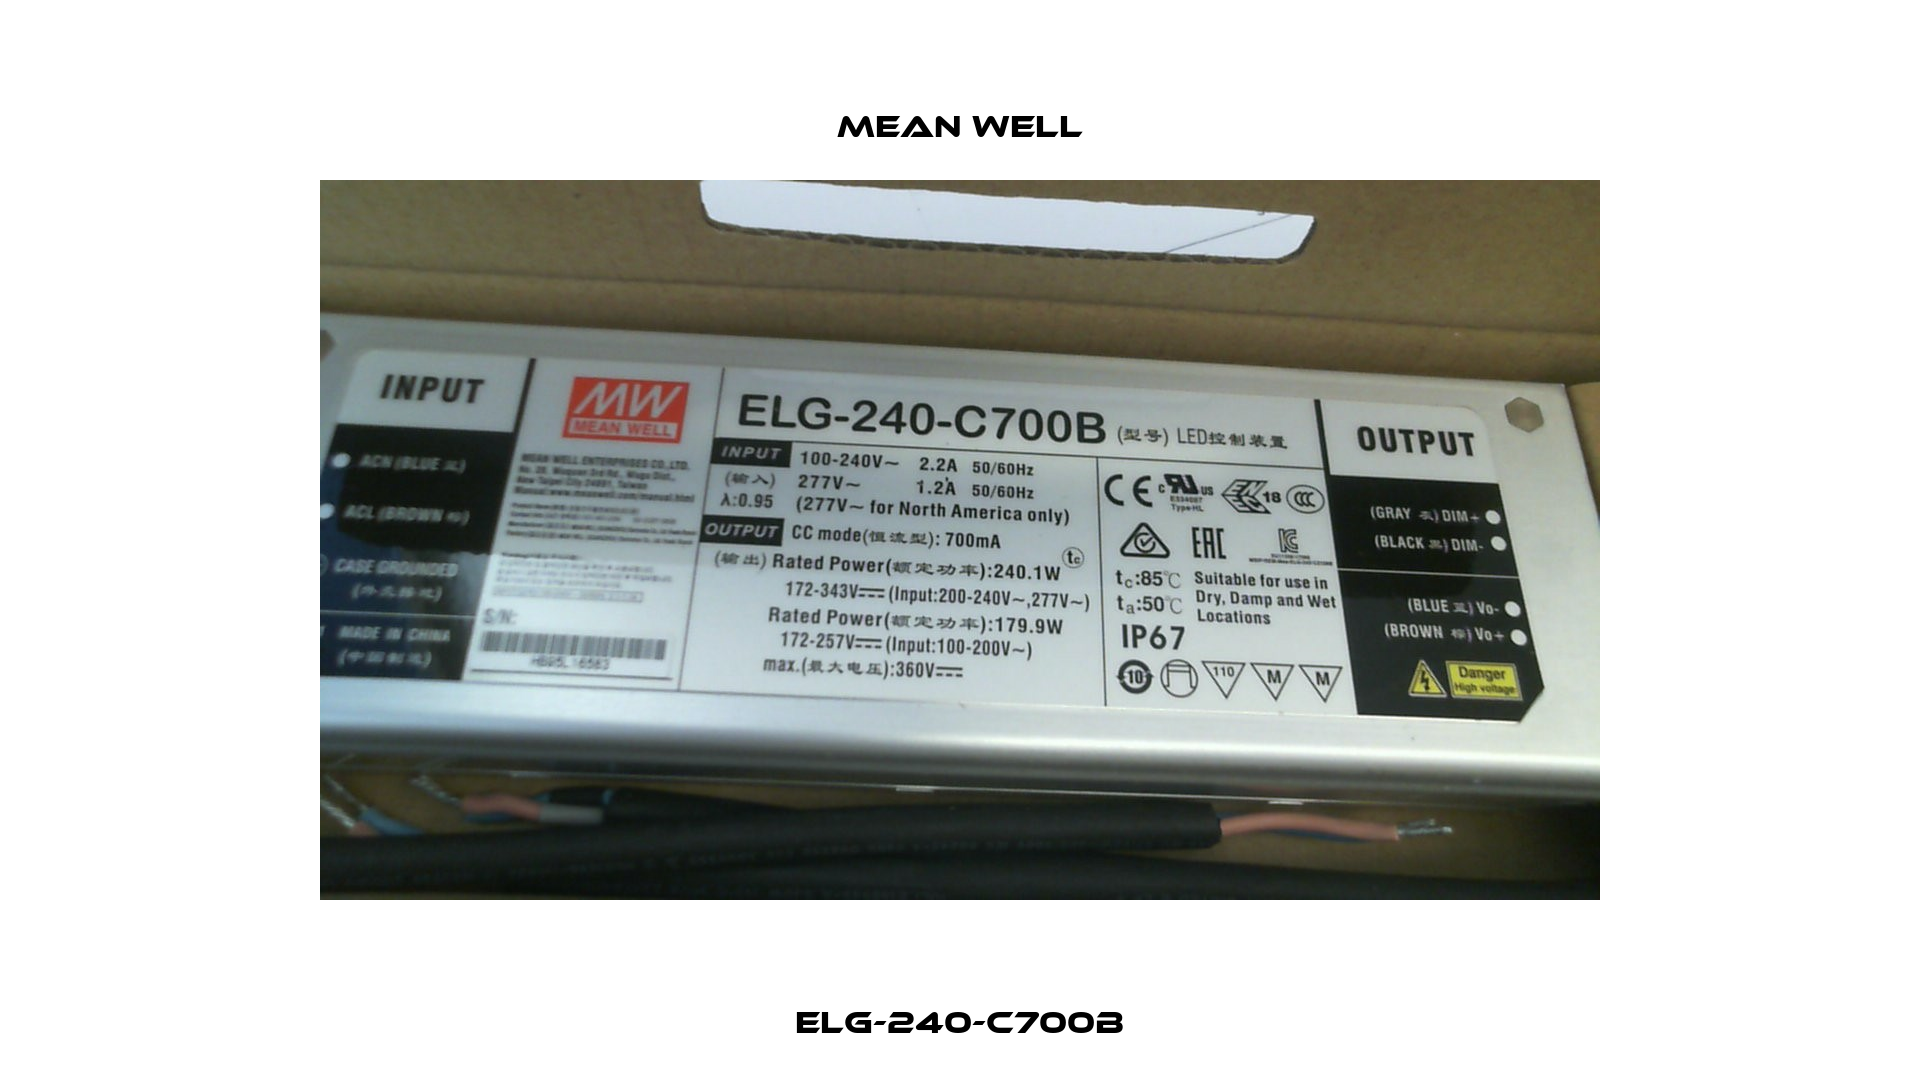 ELG-240-C700B Mean Well